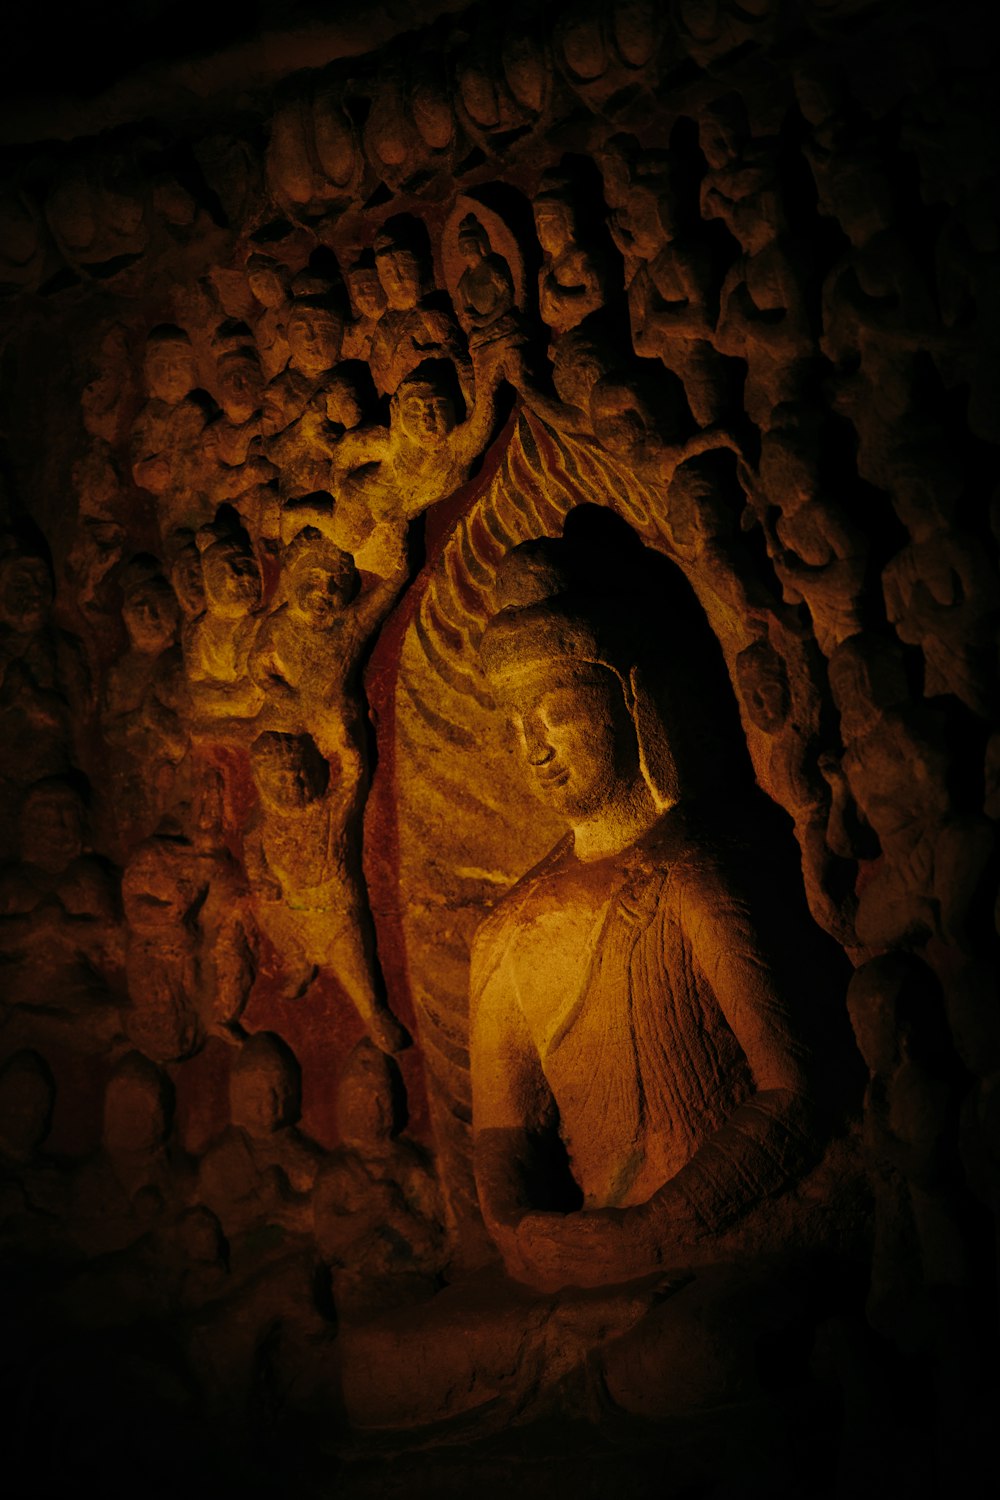 a statue of a buddha in a cave